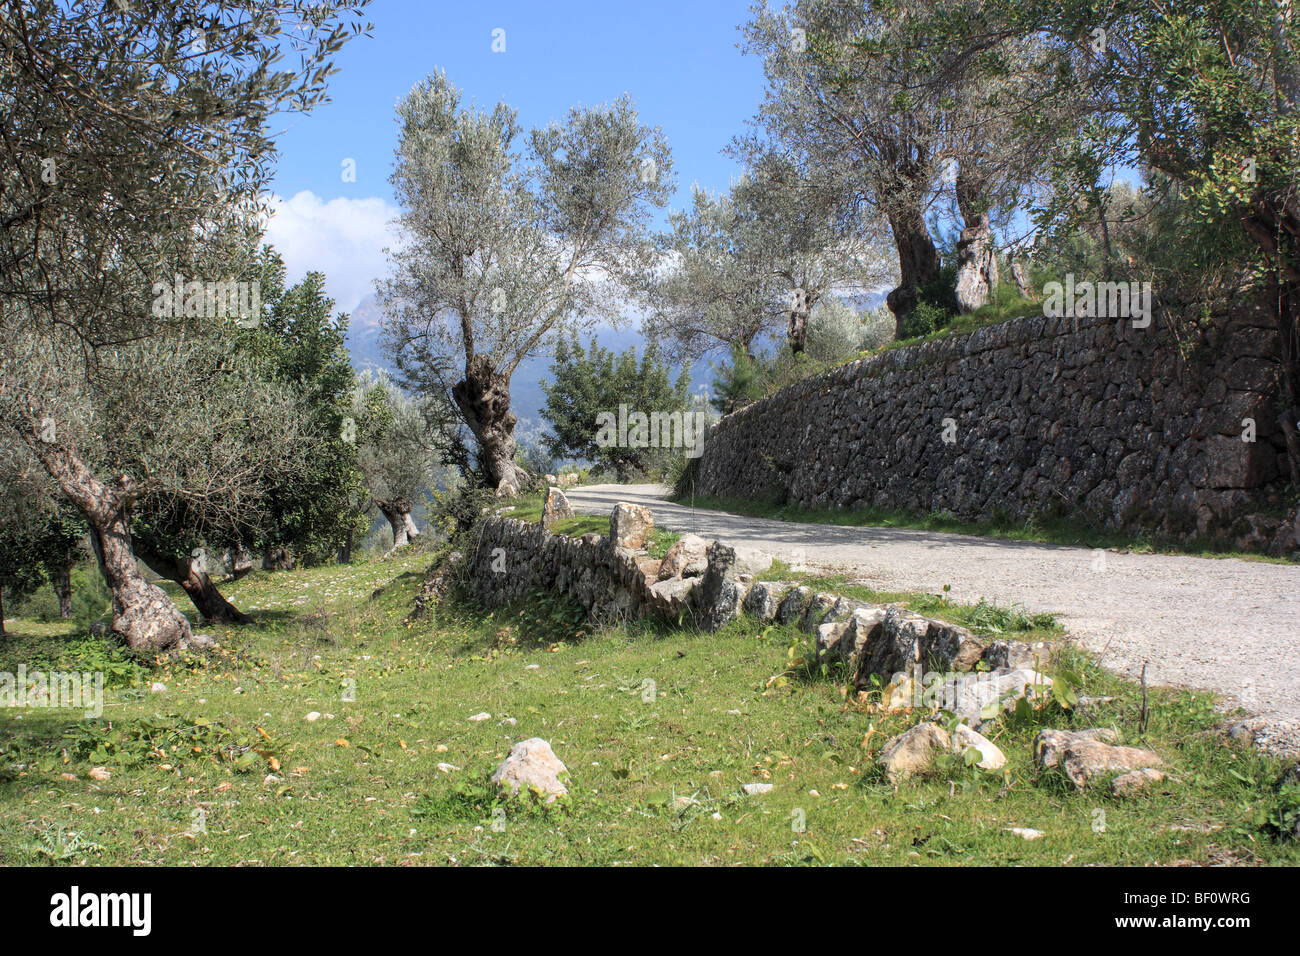 Olive grove near Sóller, Majorca Island, Spain Stock Photo